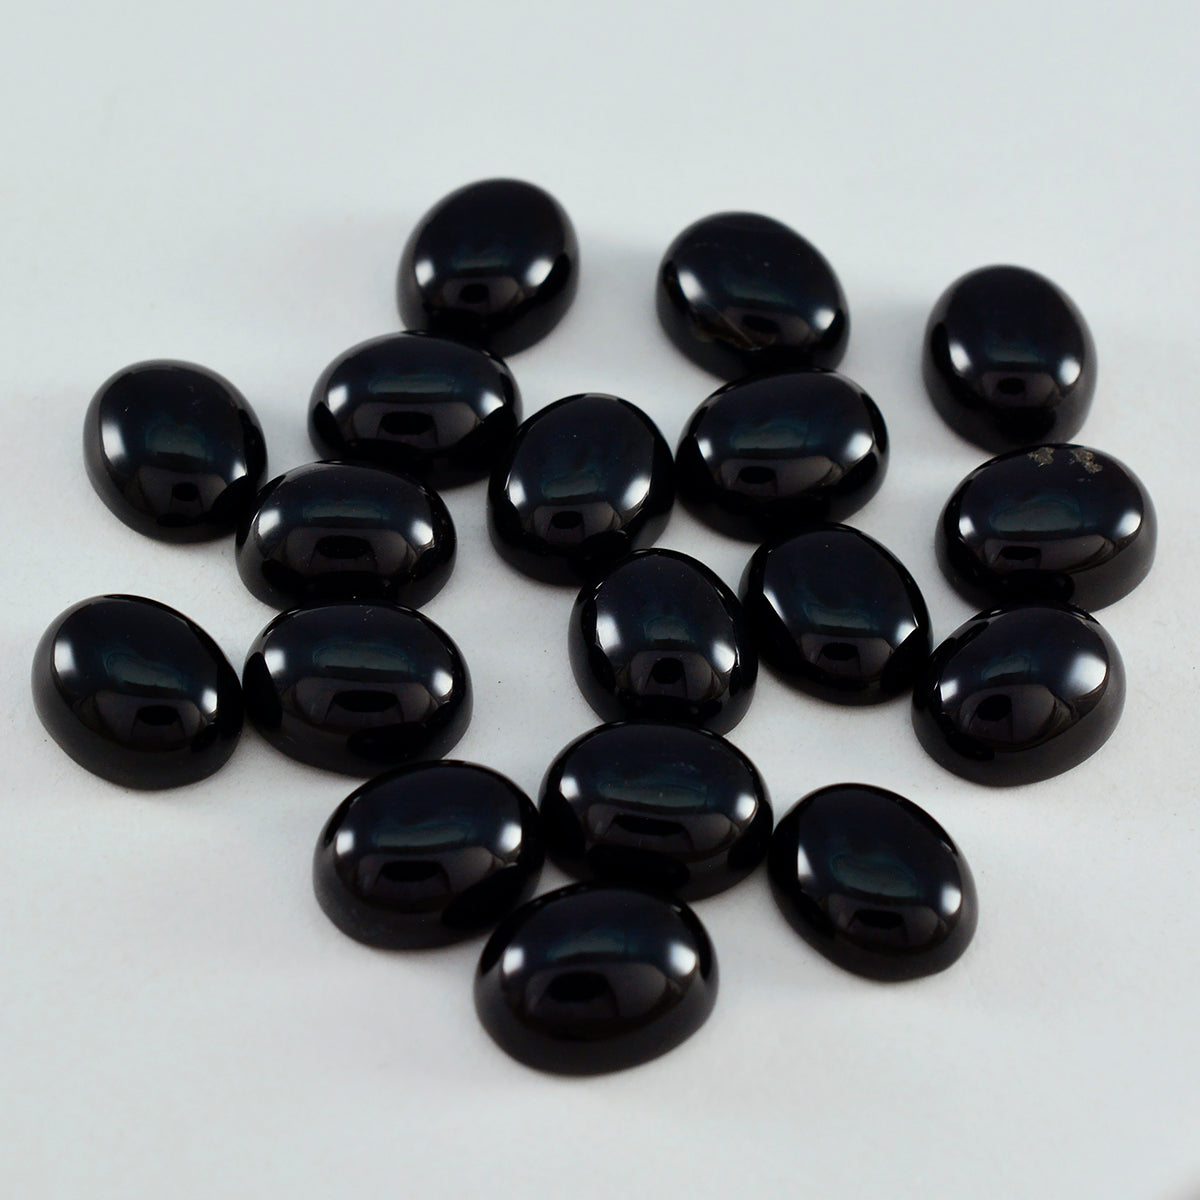 riyogems 1pc cabochon onyx noir 6x8 mm forme ovale excellente qualité pierre précieuse